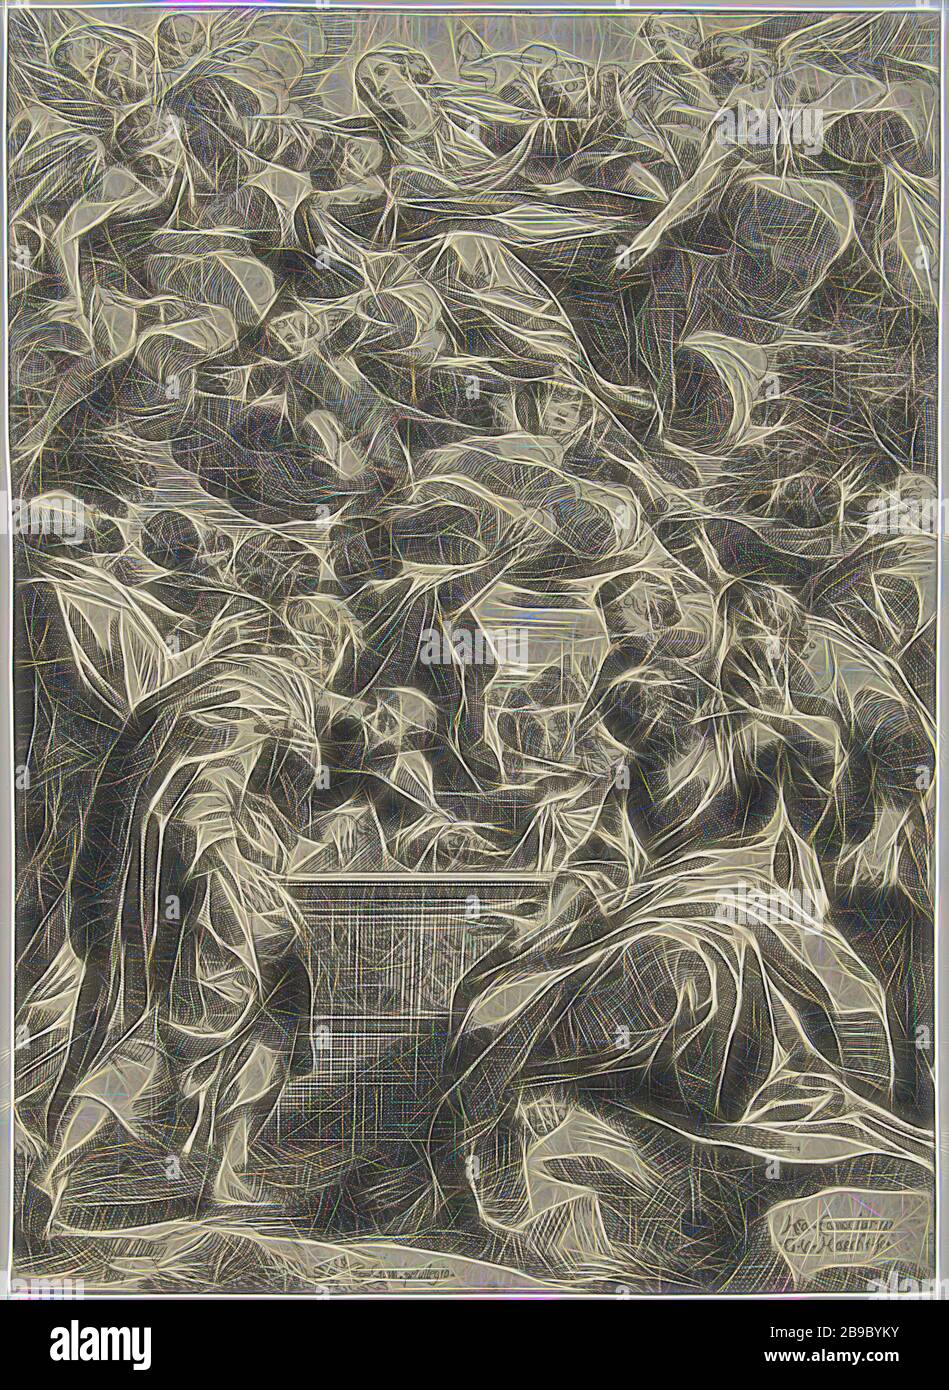 Mariä Himmelfahrt wird Maria mit ihren Armen von Engeln weggetragen. Unter ihr das von den Aposteln umgebene offene Grab Mariä Himmelfahrt ('assumptio corporis'): Sie wird von Engeln (in der Luft schwebender Engel), Willem van Haecht (II) (auf Objekt erwähnt), Antwerpen, 1603 - 1637, Papier, Radierung, h 262 mm × w 191 mm, von Gibon neu vorstellbar, Entwurf eines warmfröhlichen Lichts der Helligkeit und Lichtstrahlen in den Himmel getragen. Klassische Kunst mit moderner Note neu erfunden. Fotografie inspiriert von Futurismus, die dynamische Energie moderner Technologie, Bewegung, Geschwindigkeit und Revolution von cu umfasst Stockfoto